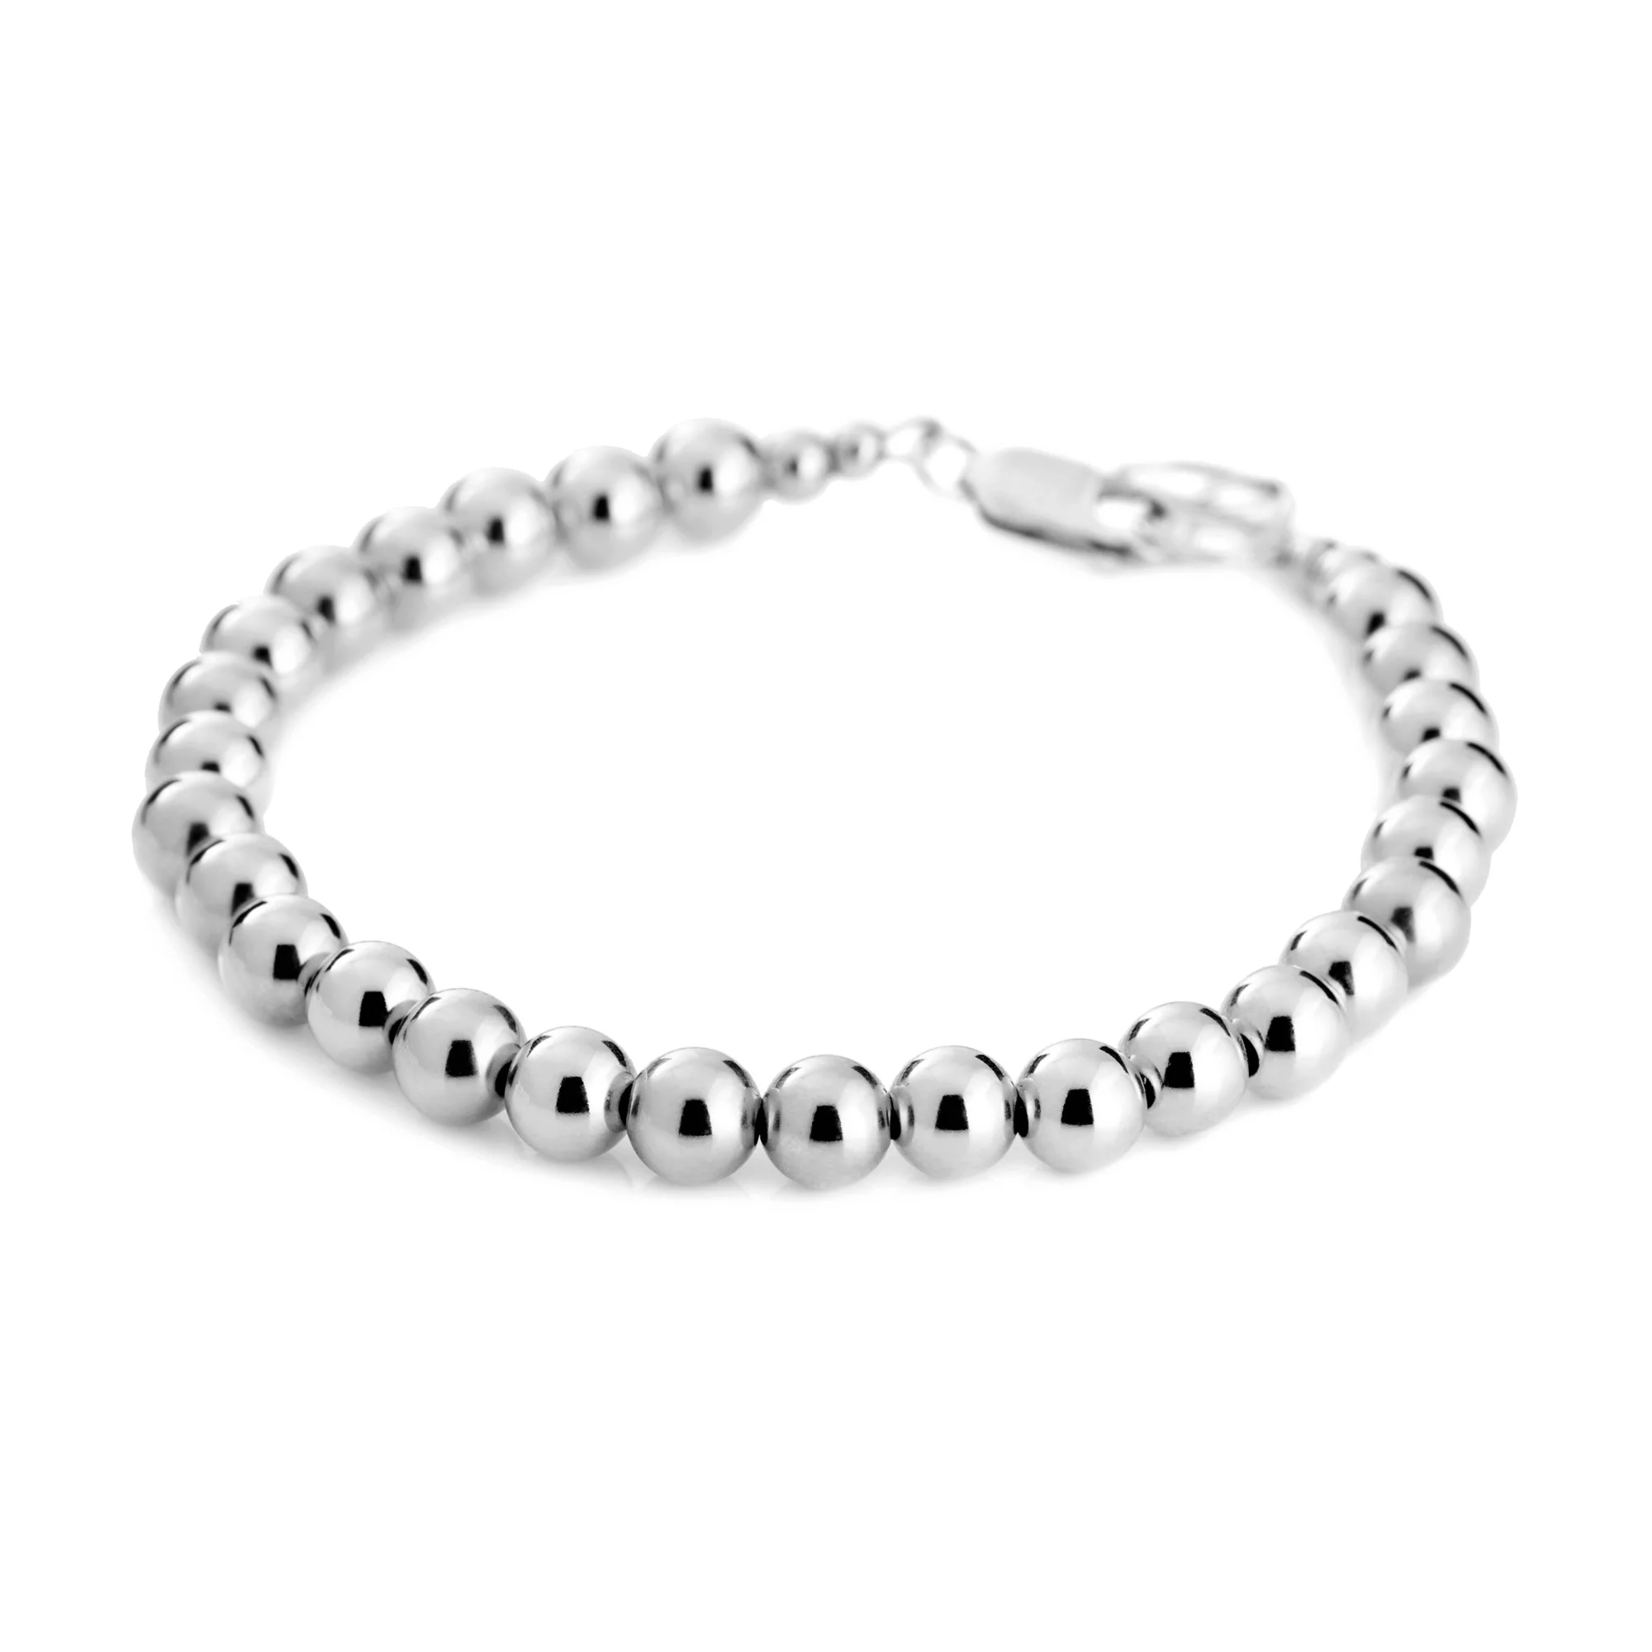 Lolo Jewellery Silver Ball Bracelet - 6mm